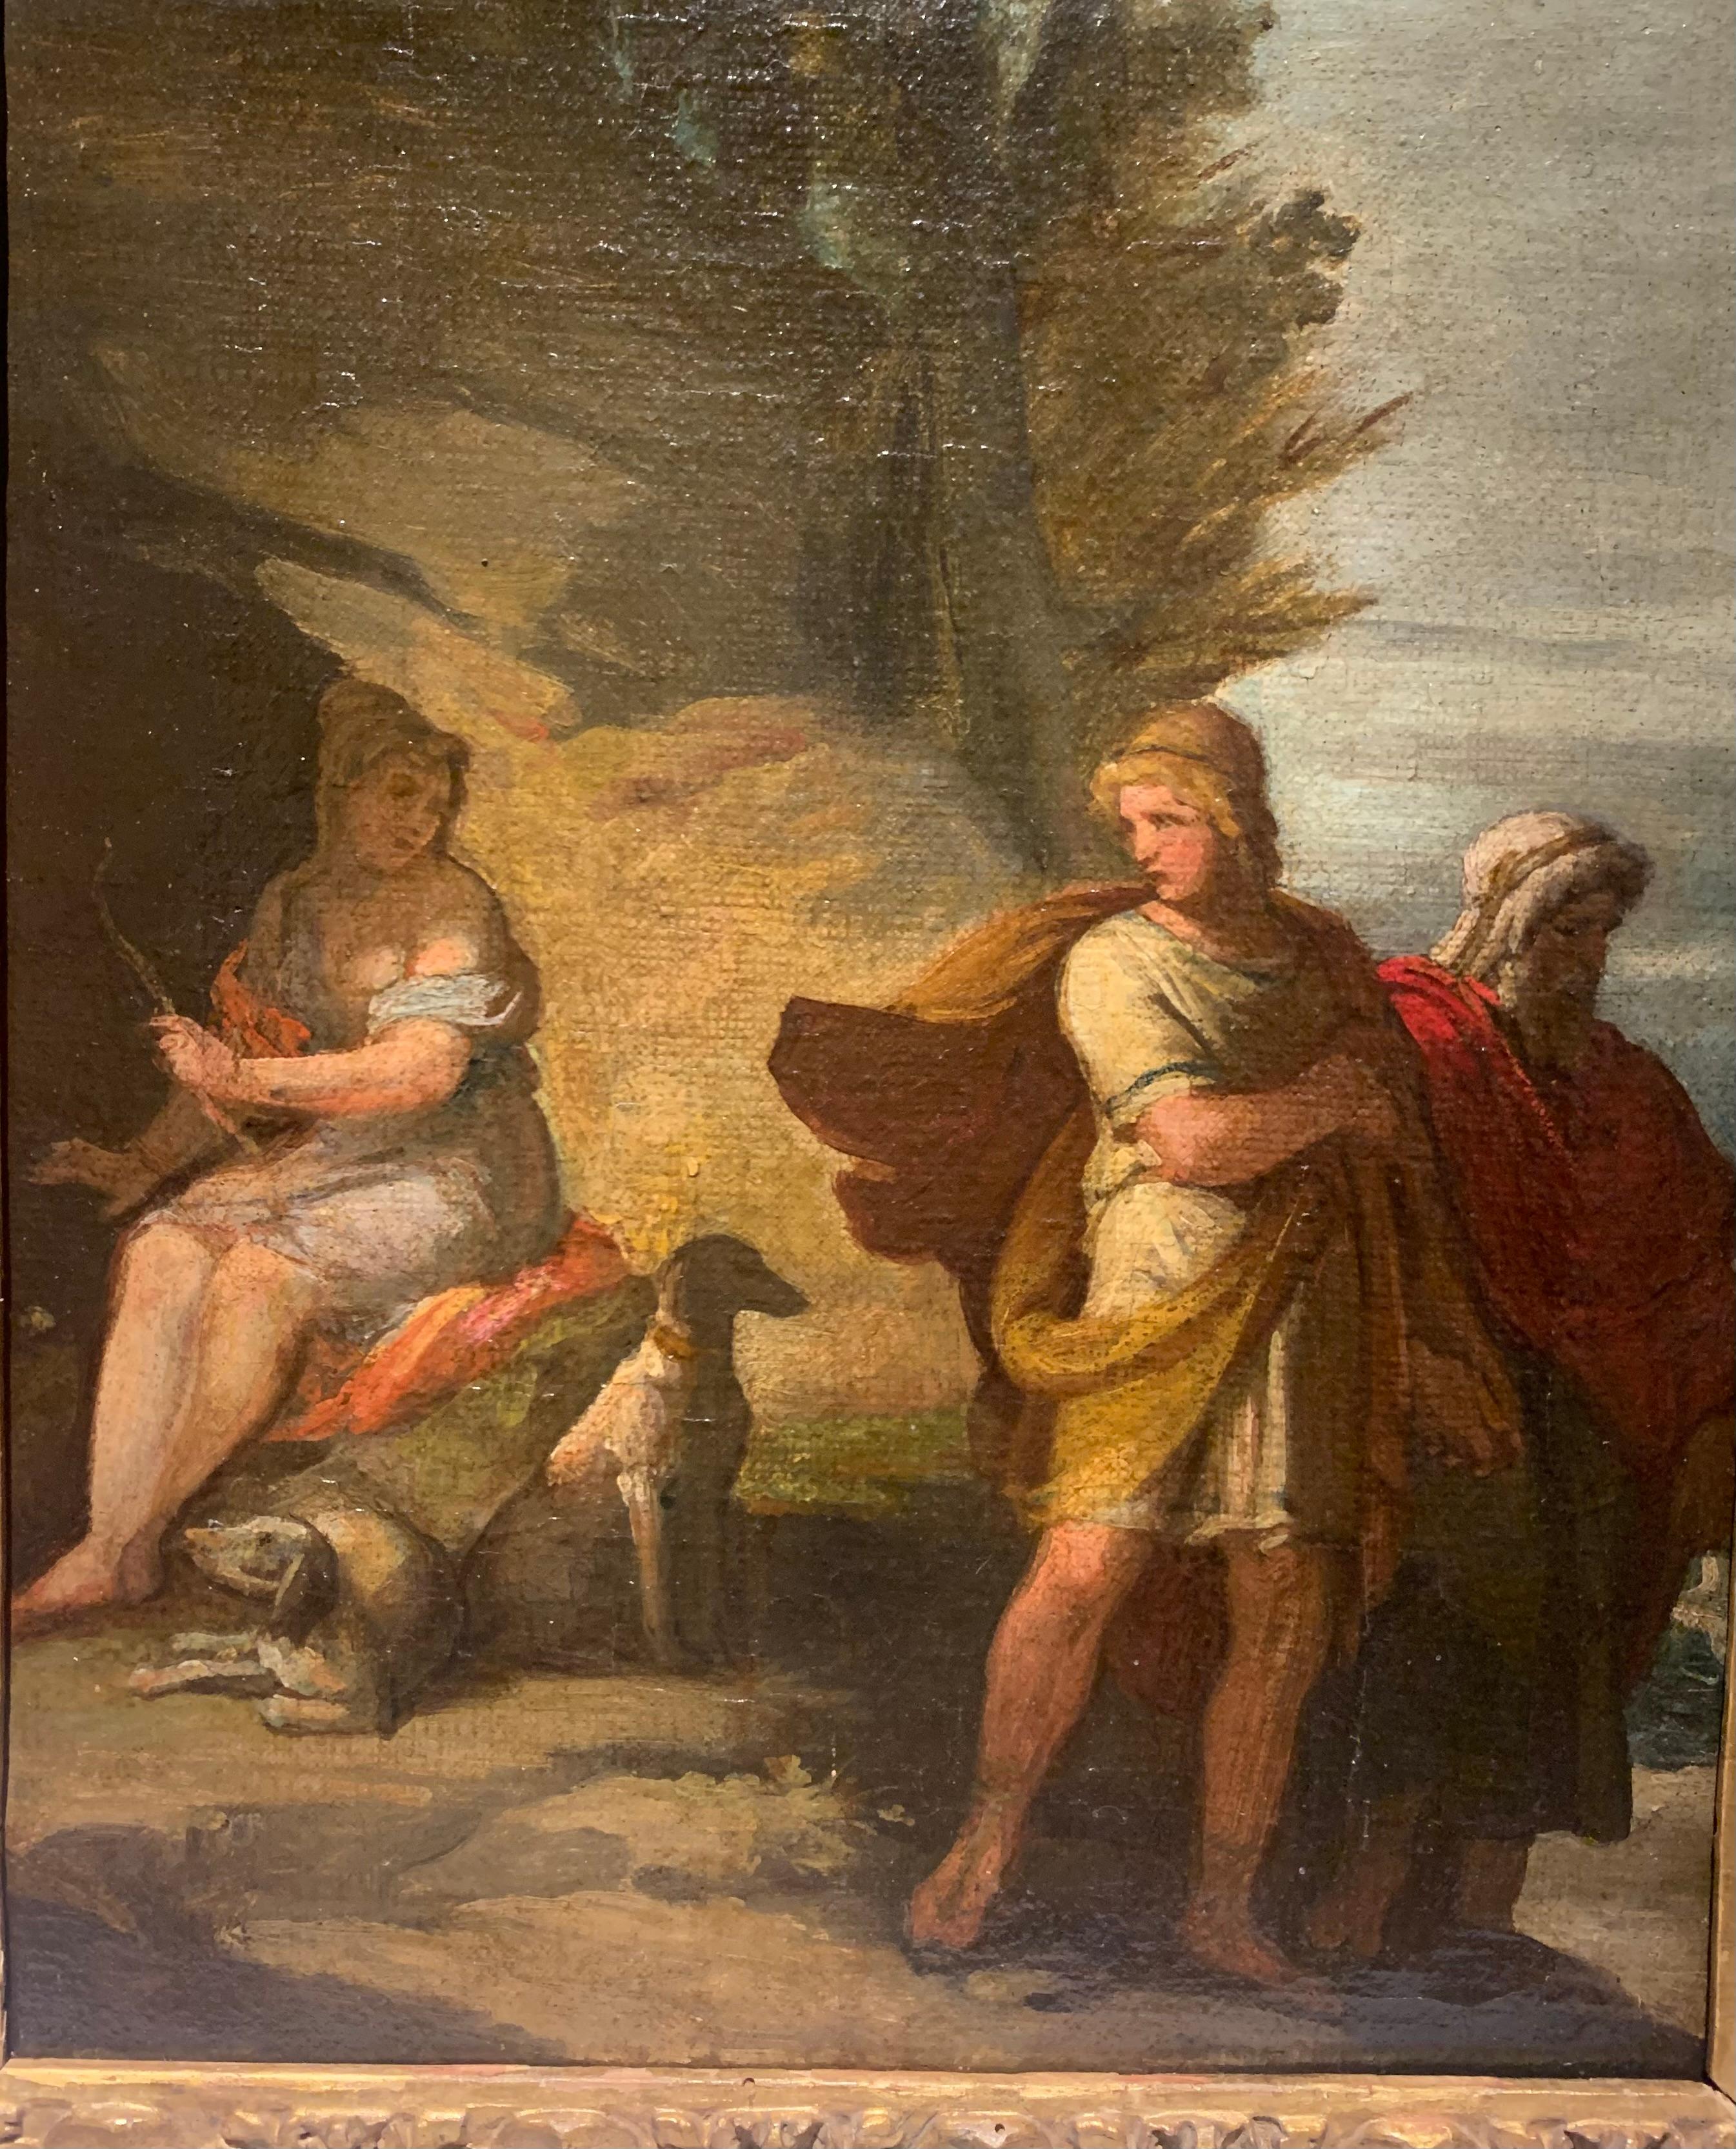 Peinture à thème mythologique (non encadrée 35,5 x 28 cm) représentant l'épisode de Diane et Actéon des Métamorphoses d'Ovide.
La déesse est représentée assise en tenue discrète, l'arc - son attribut - et les chiens, futurs bourreaux, assis à ses